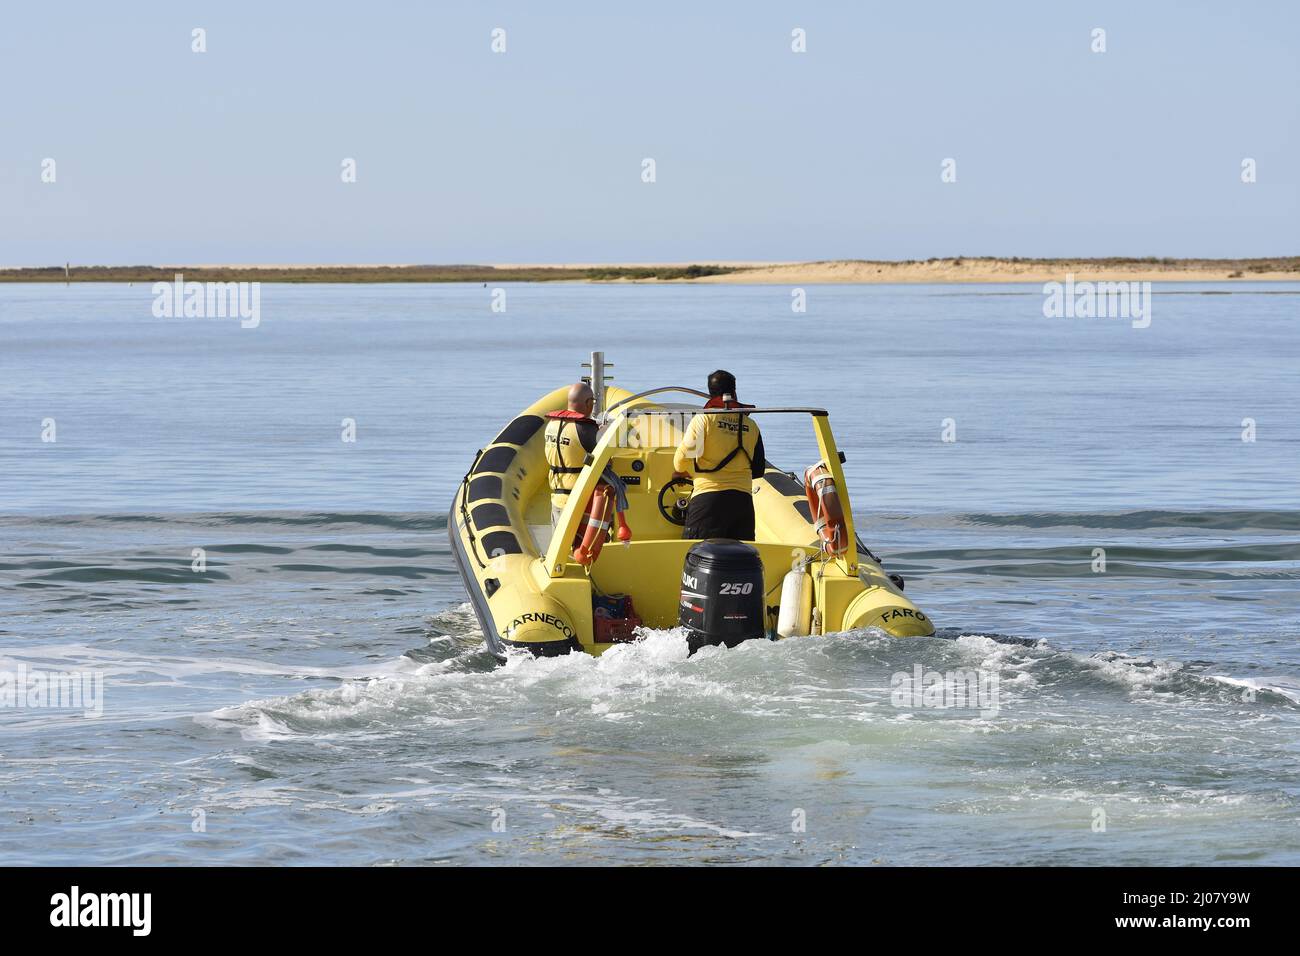 Animaris Ilha Deserta (agenzia di tour in barca) motoscafo che opera tra Faro e Barreta Island in Algarve Portogallo meridionale. Foto Stock